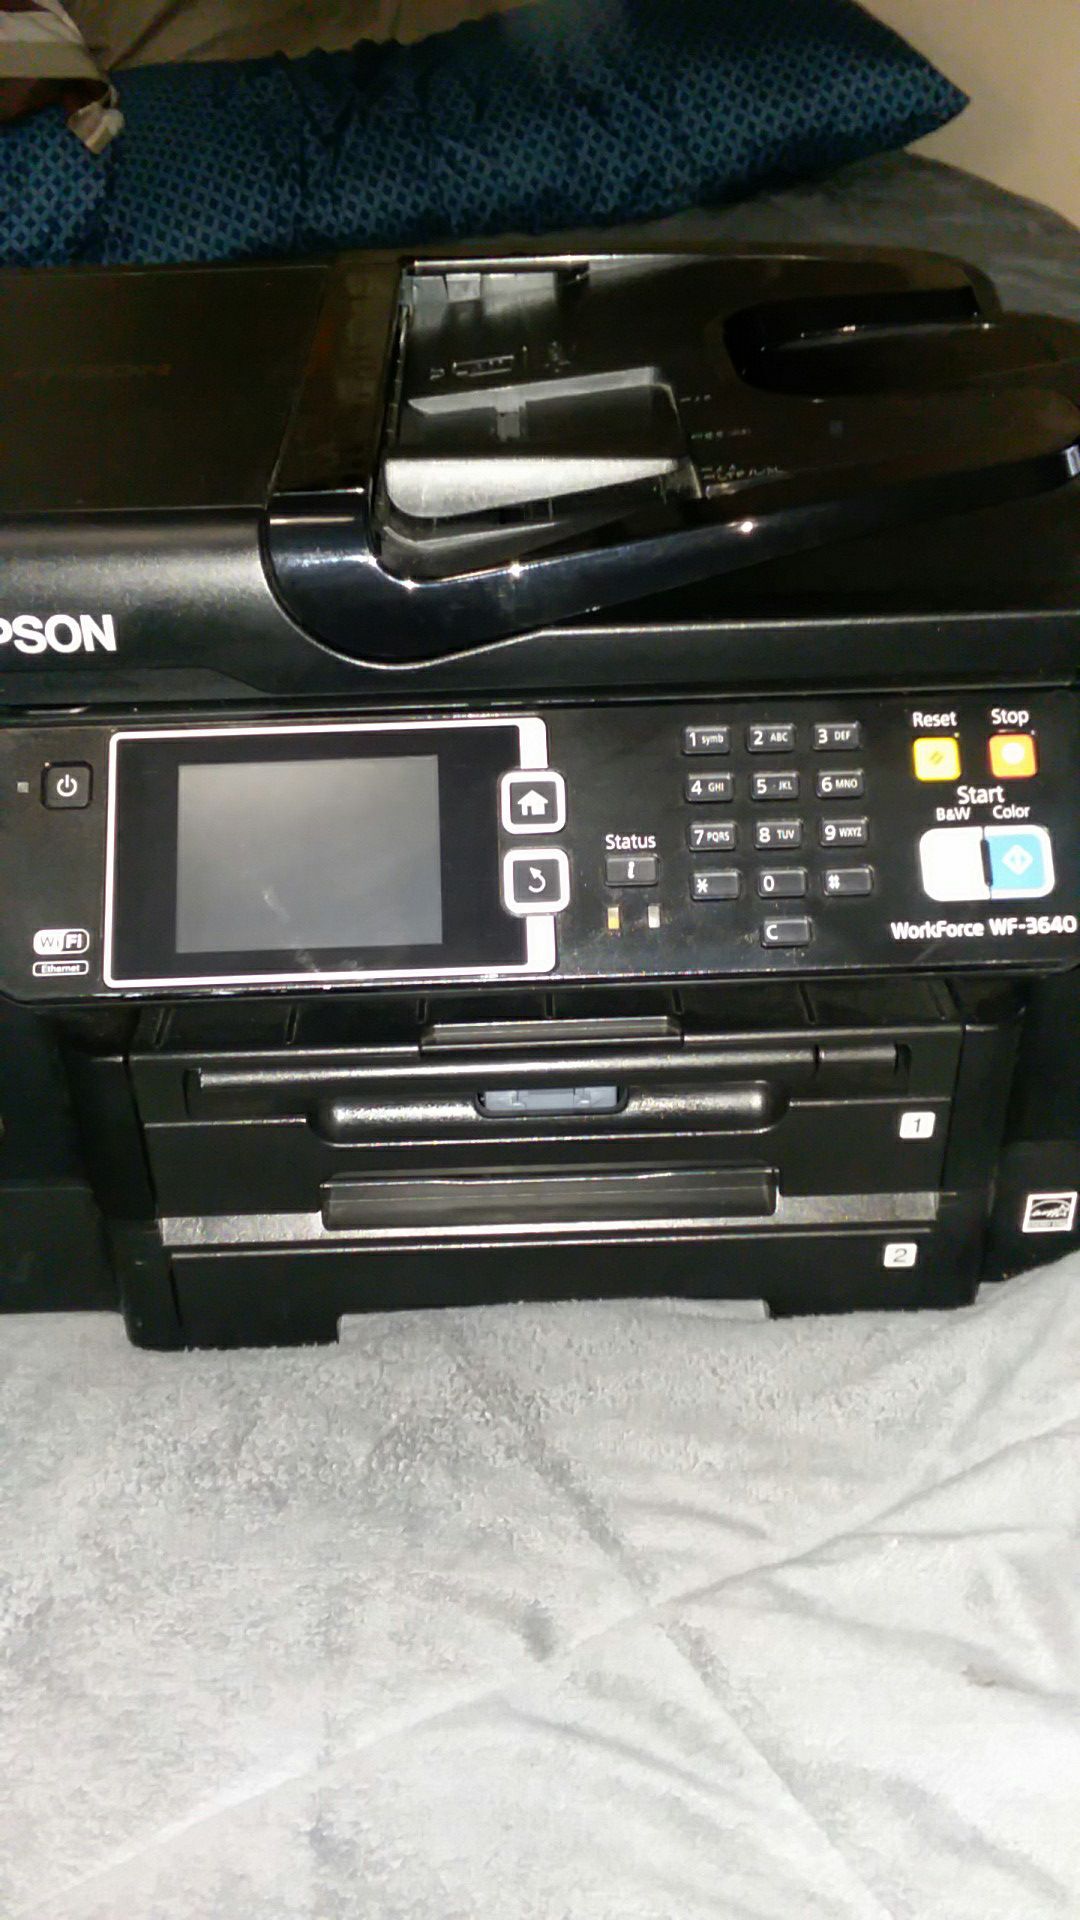 Epson wf-3640 printer